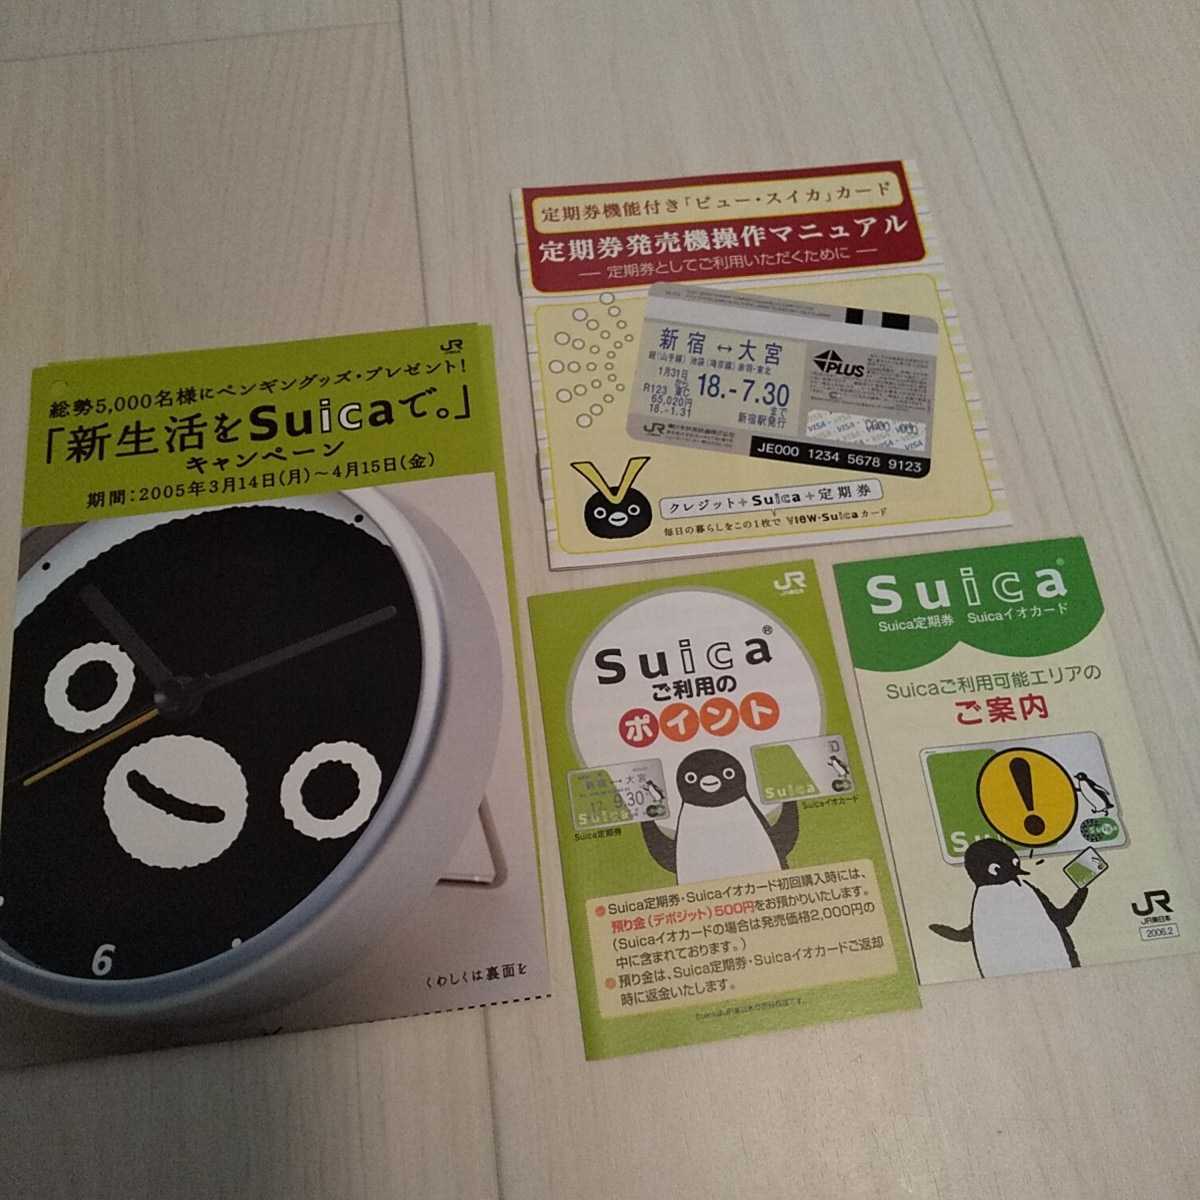 ◆JR東日本Suica関連パンフレット42枚セット 2005～2007年頃 Suicaのペンギン/ご利用案内/入会申込書/ビュー・スイカ/モバイルSuica/パスモ_画像8